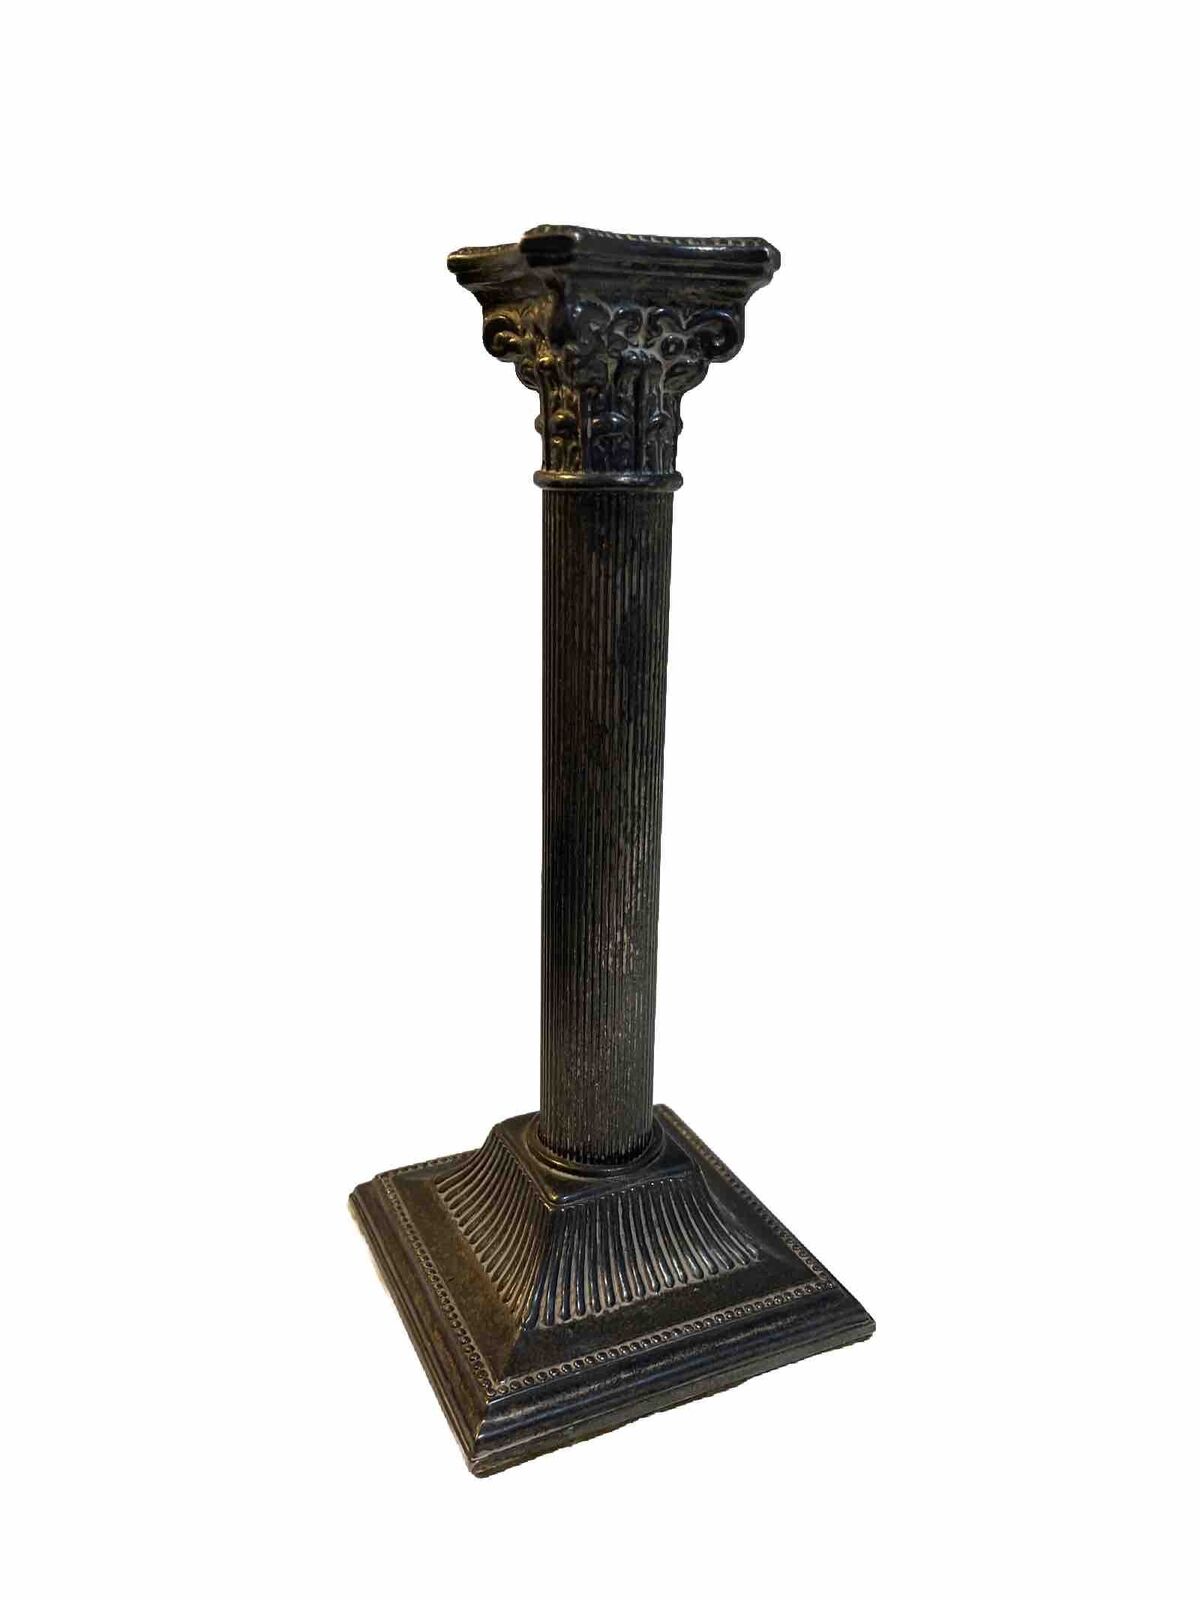 Candle Holder Vintage Greek Column 8.5” Silver Plated Godinger?